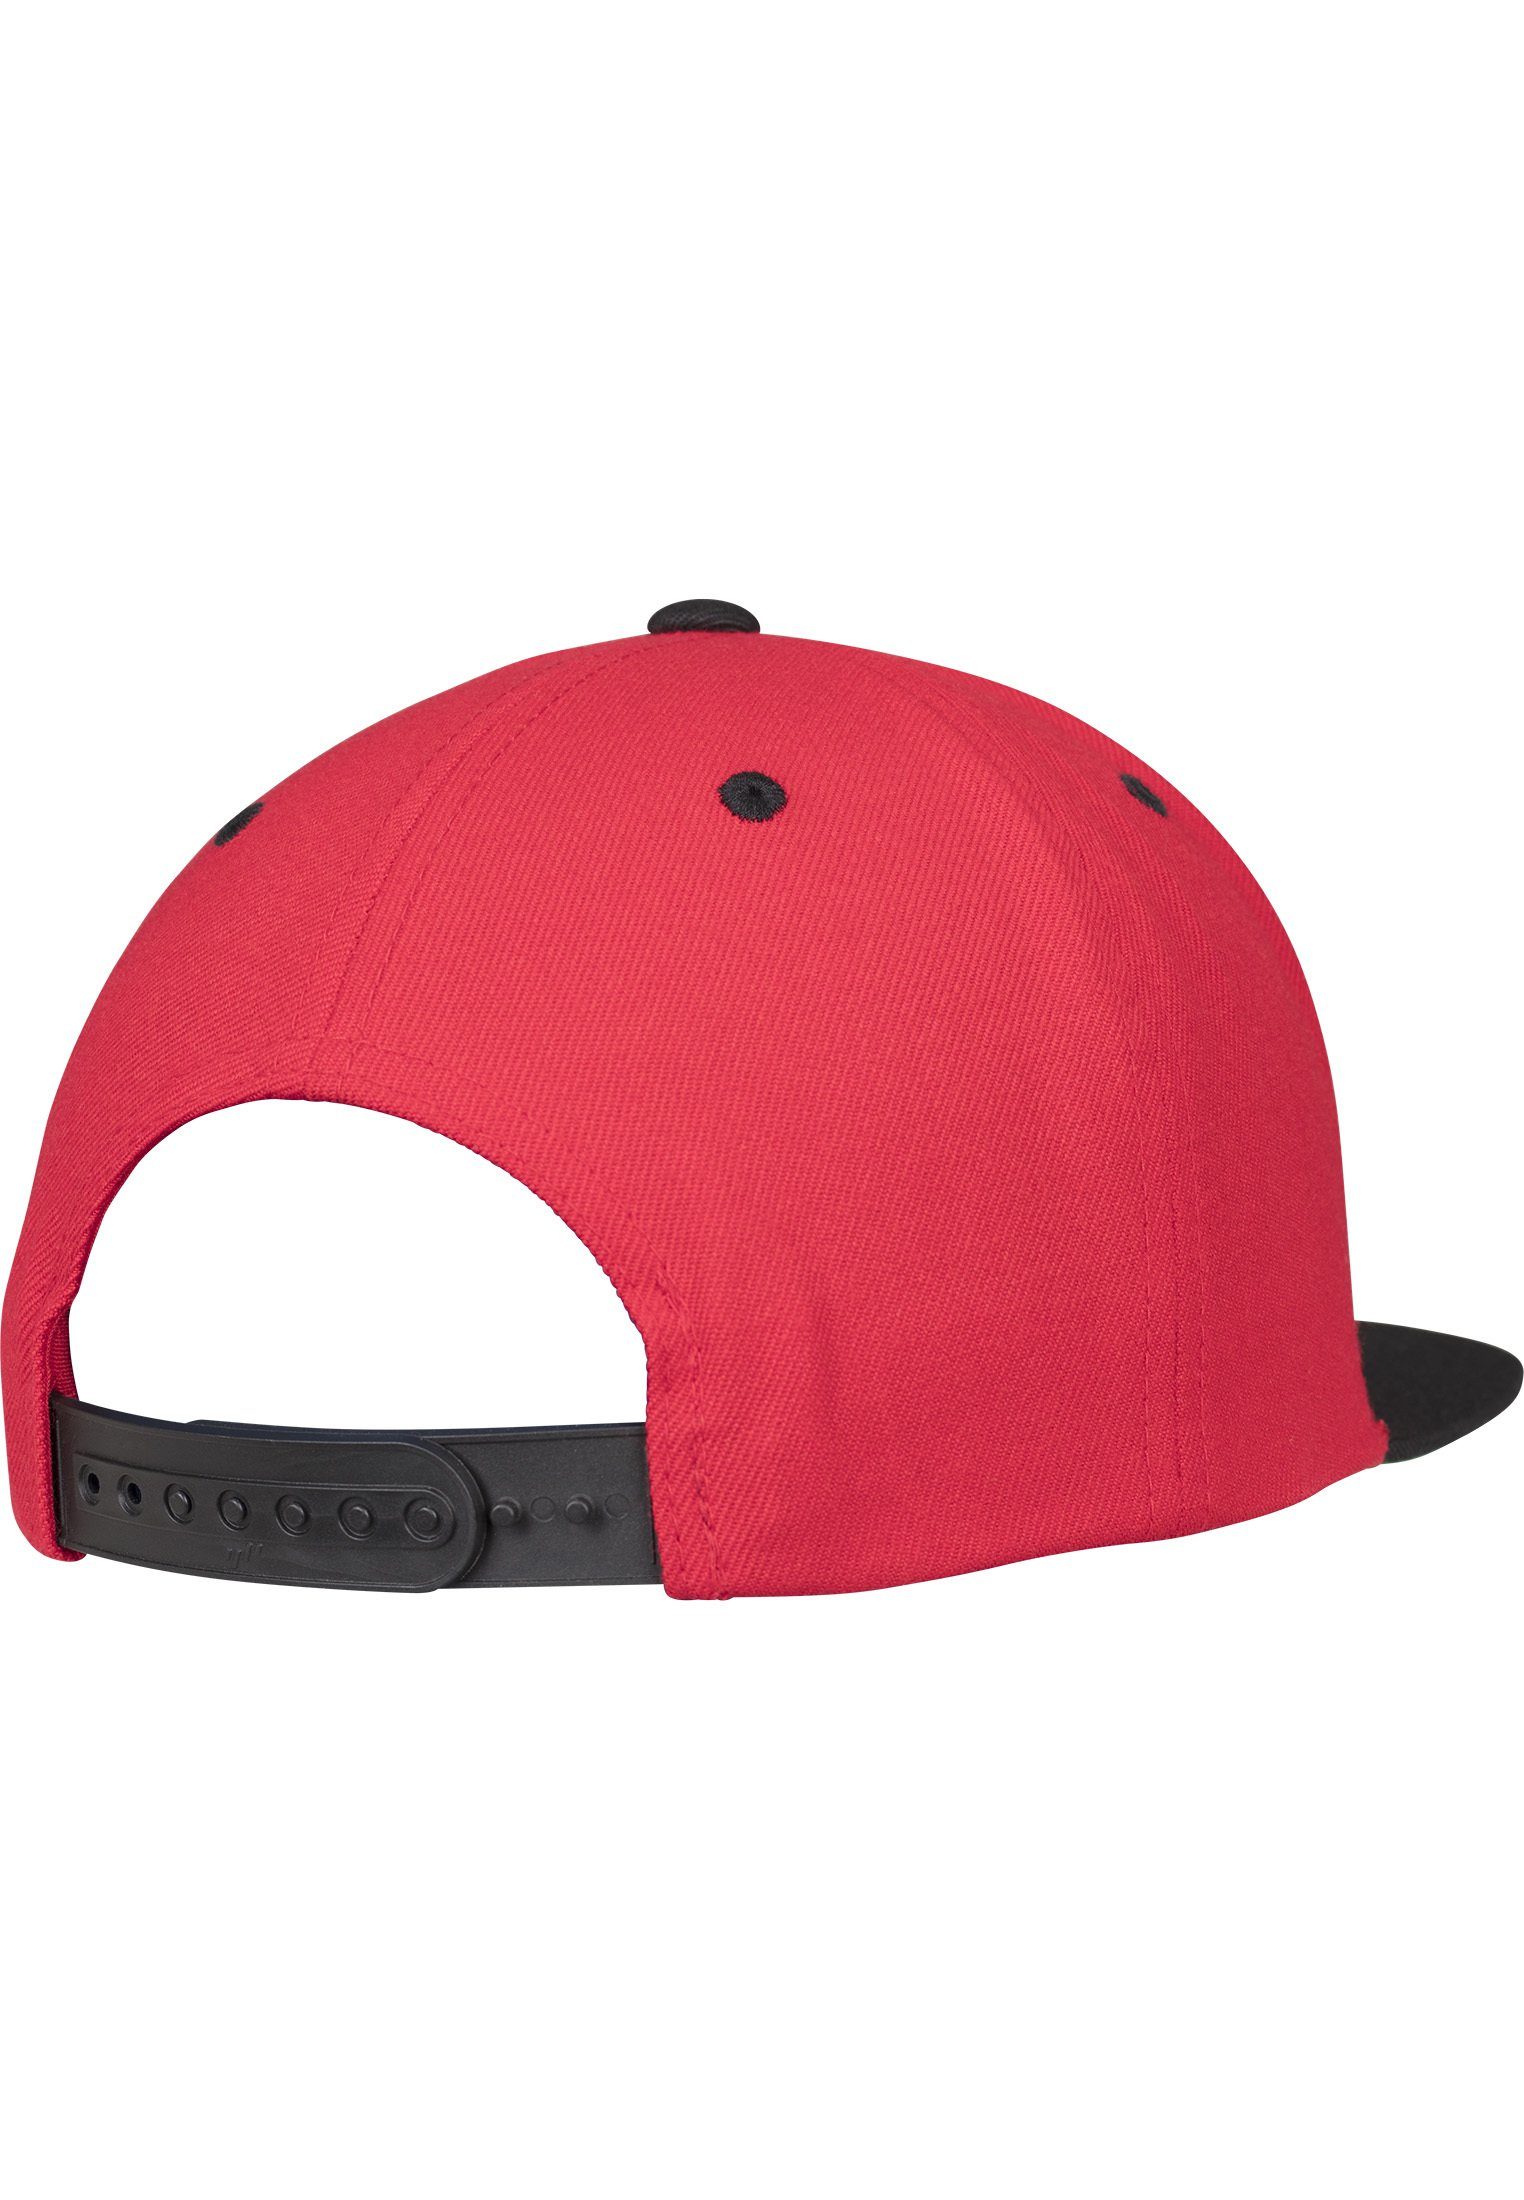 2-Tone red/black Flex Snapback Classic Snapback Cap Flexfit